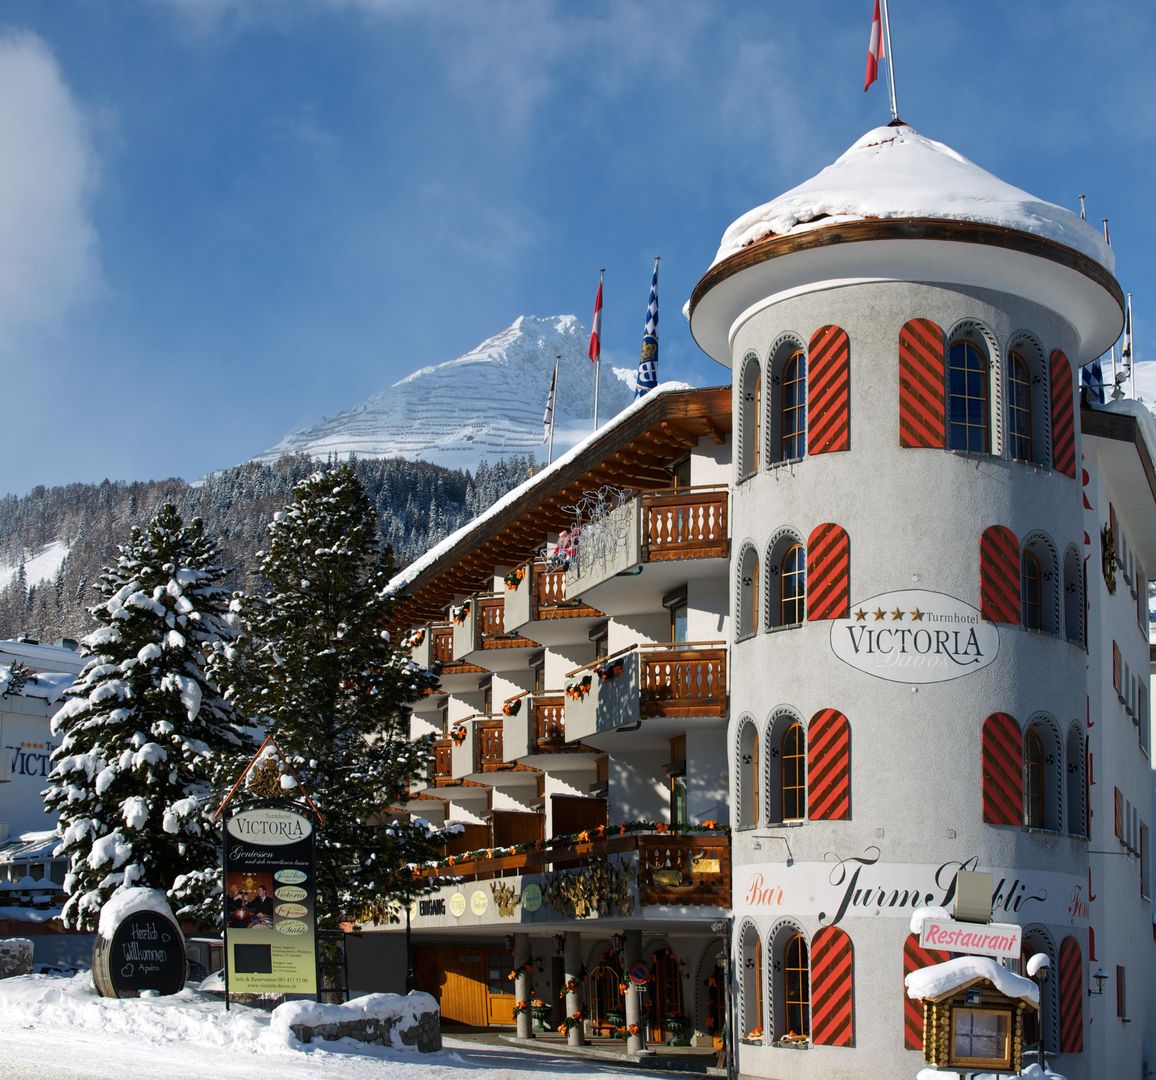 Turmhotel Victoria in Davos, Turmhotel Victoria / Schweiz